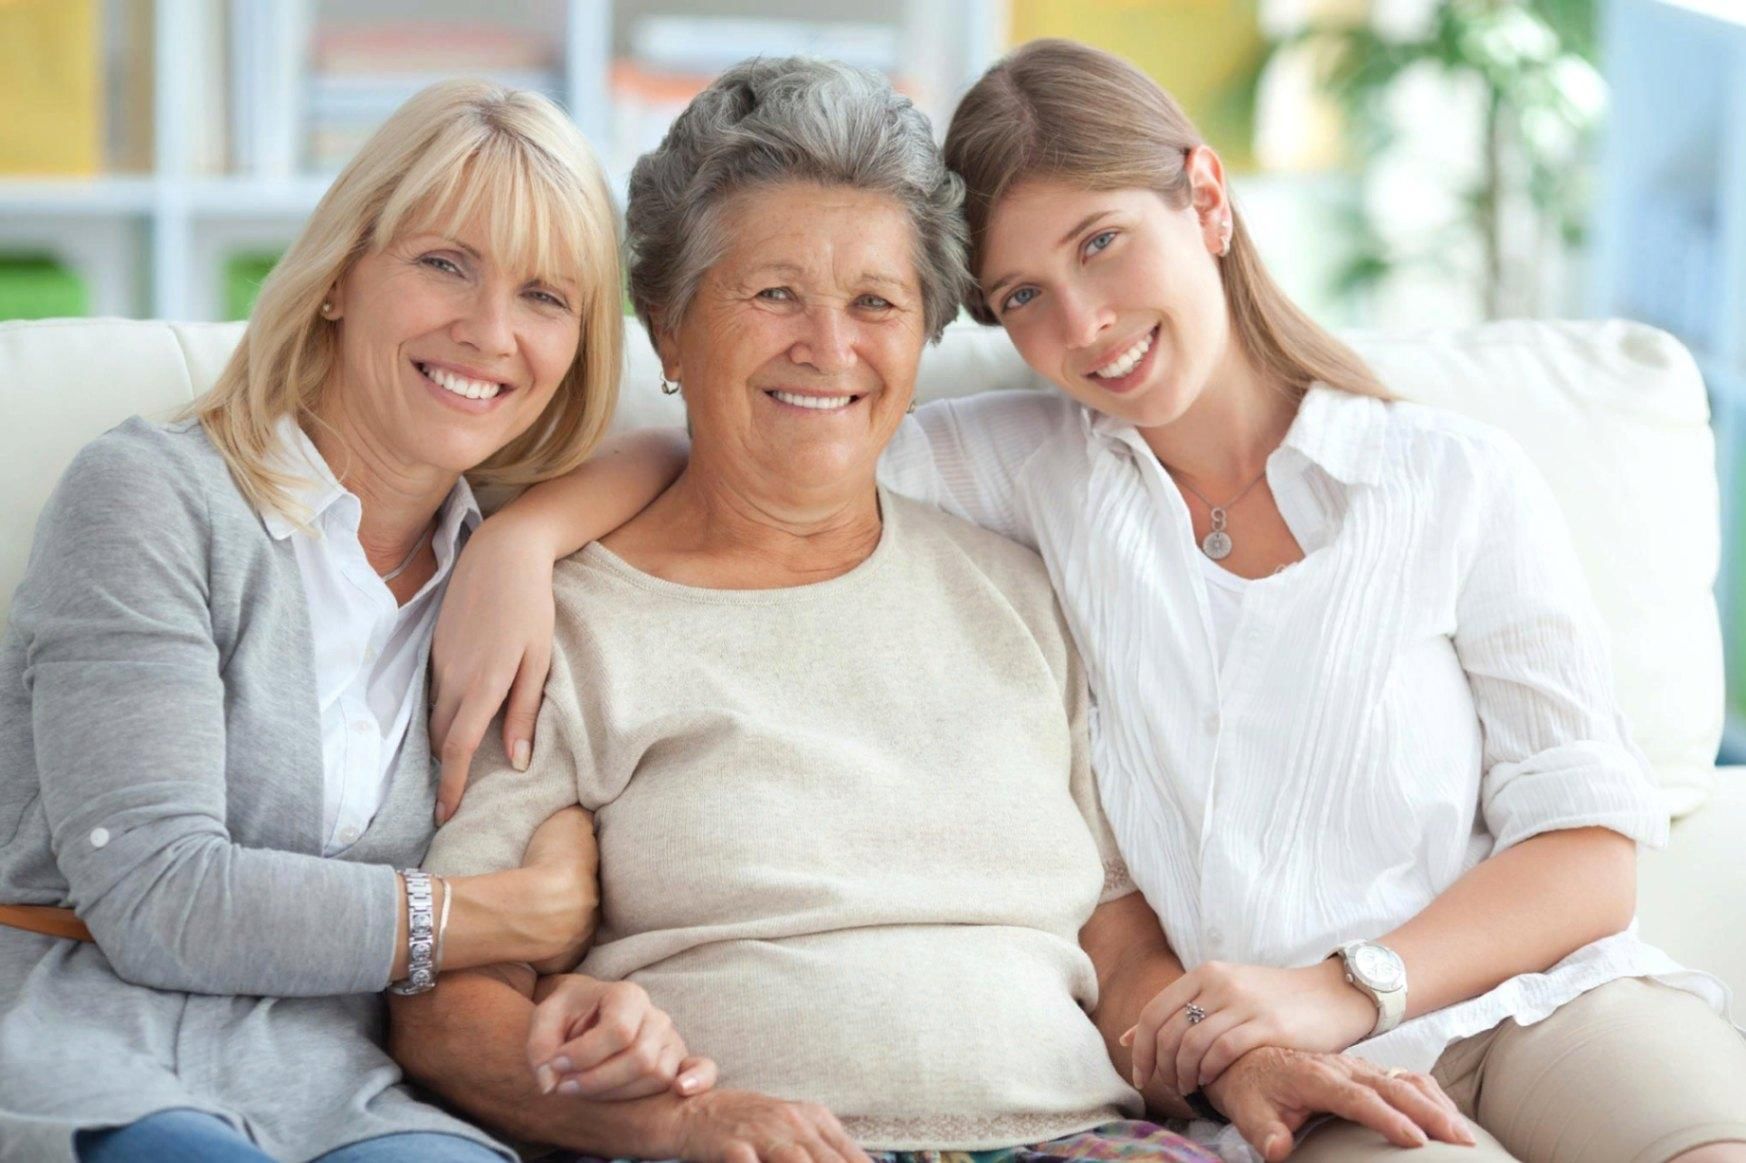 Content aged. Женщины разных возрастов. Три поколения женщин. Женщина в семье. Разные поколения.